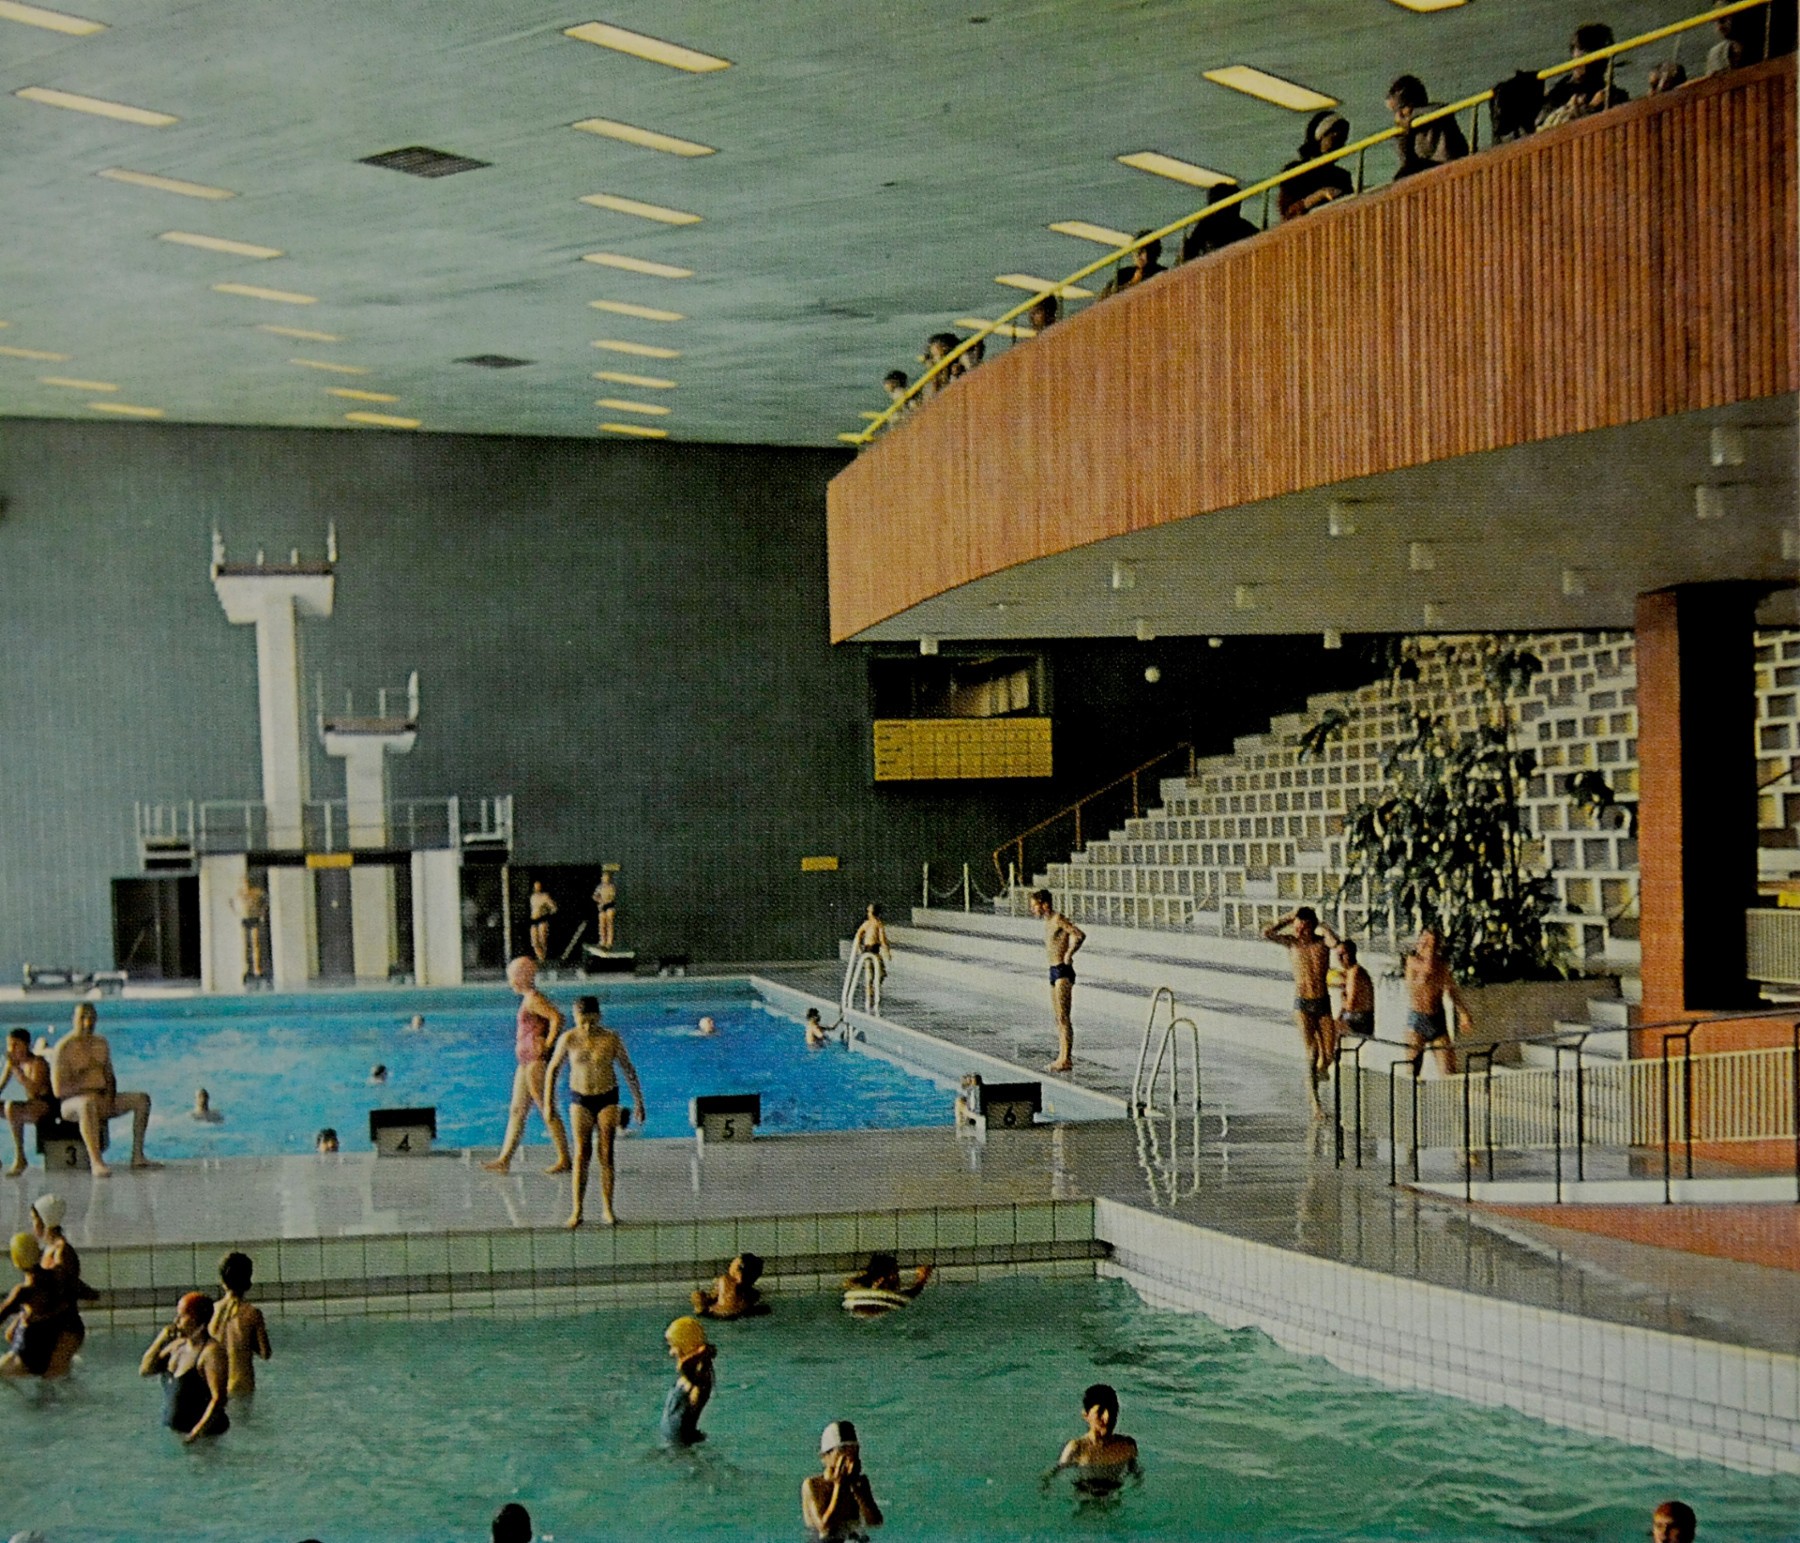 Unten wird geplanscht, oben vergnügen sich die Trockenschwimmer in der Milchbar. Dieses Bild von Josef Stoffels entstand 1966. Repro: Kerstin Kokoska / FUNKE Foto Services